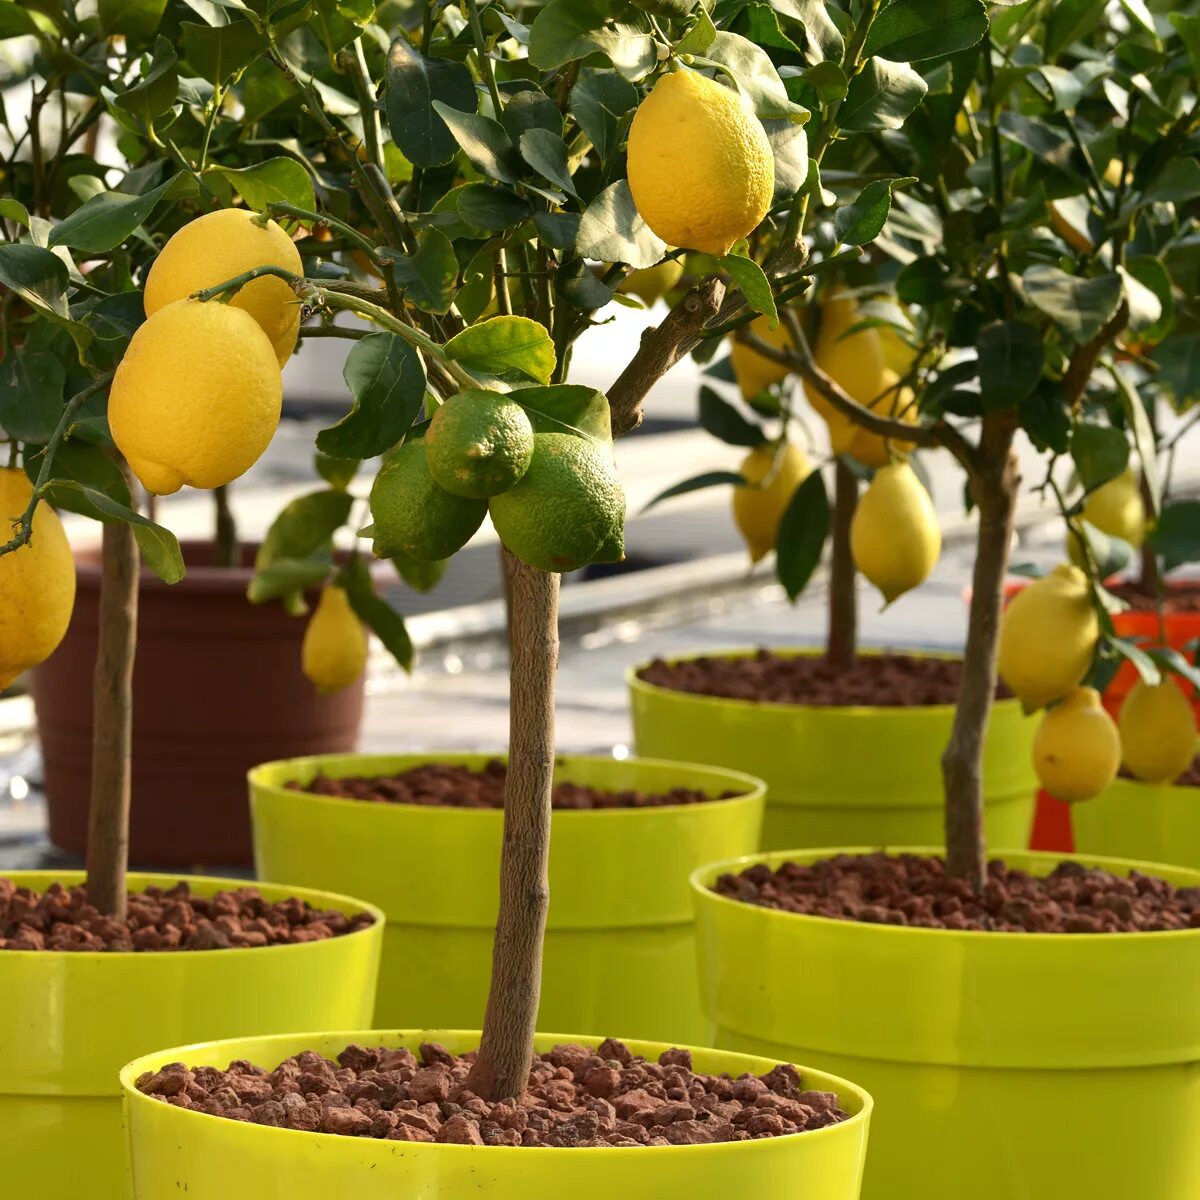 Цитрус (комнатное растение) лимон Мейера. Лимонное дерево Эврика. Цитрусовое дерево лимон. Citrus Dwarf Dwarf Citrus.